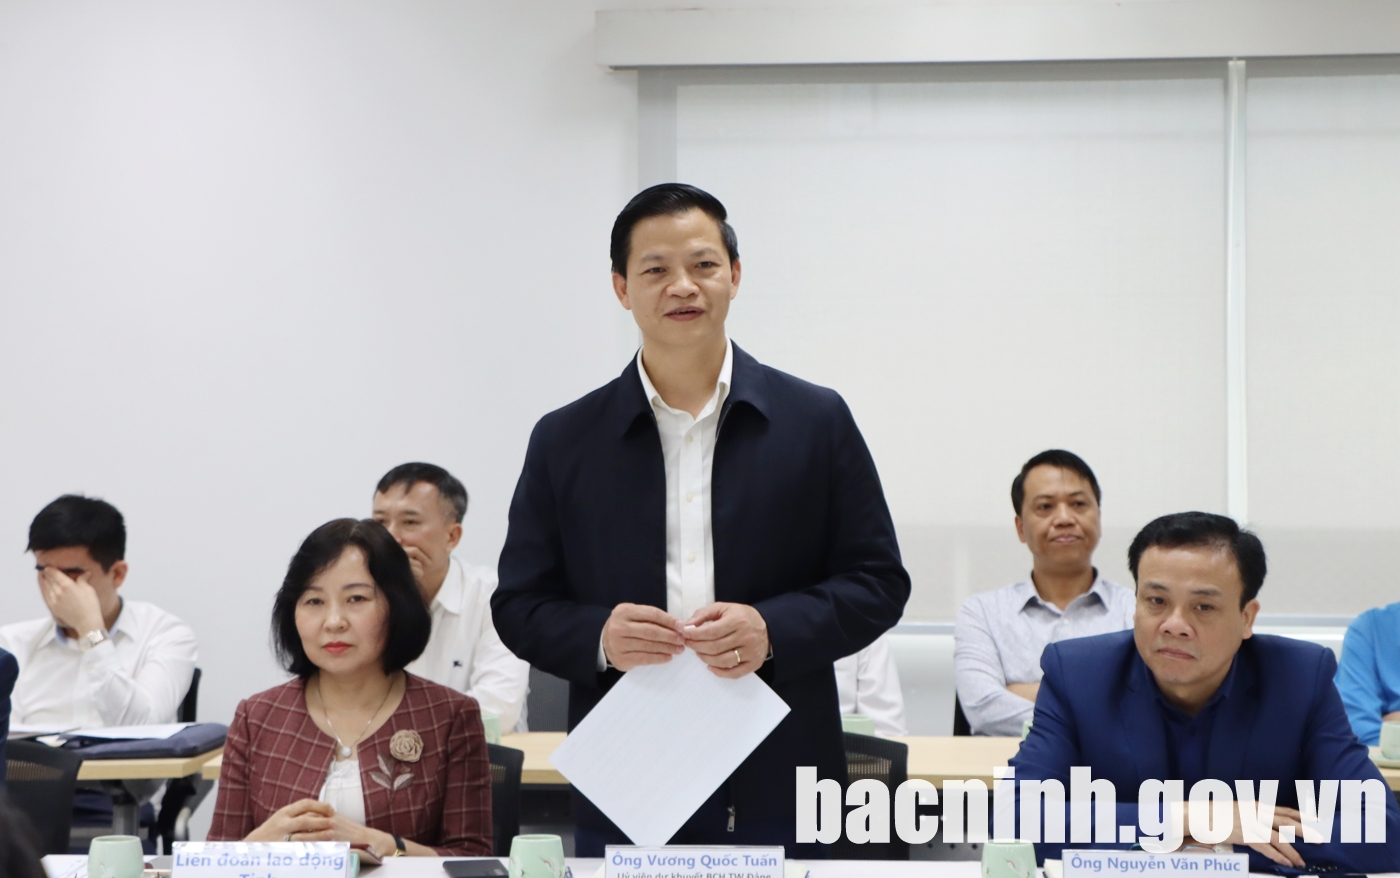 Phó Chủ tịch Thường trực UBND tỉnh Vương Quốc Tuấn phát biểu tại buổi làm việc.

Cùng đi có lãnh đạo một số sở, ban, ngành của tỉnh và thành phố Bắc Ninh.